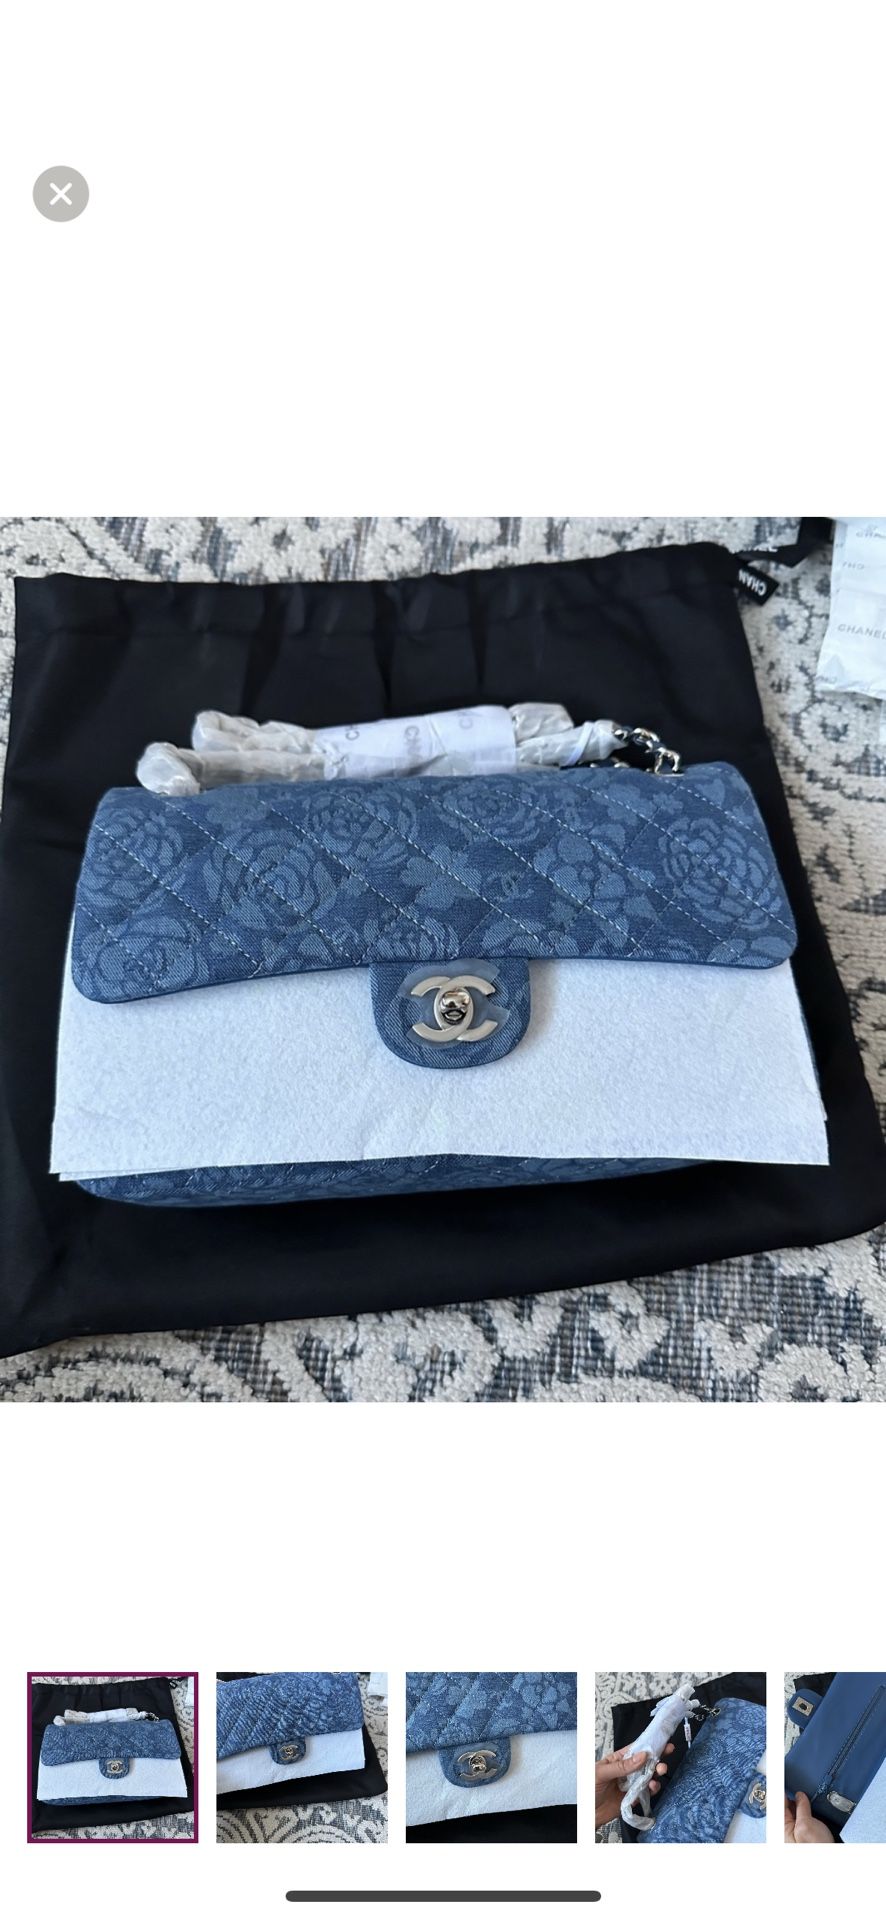 Chanel Bag 200$